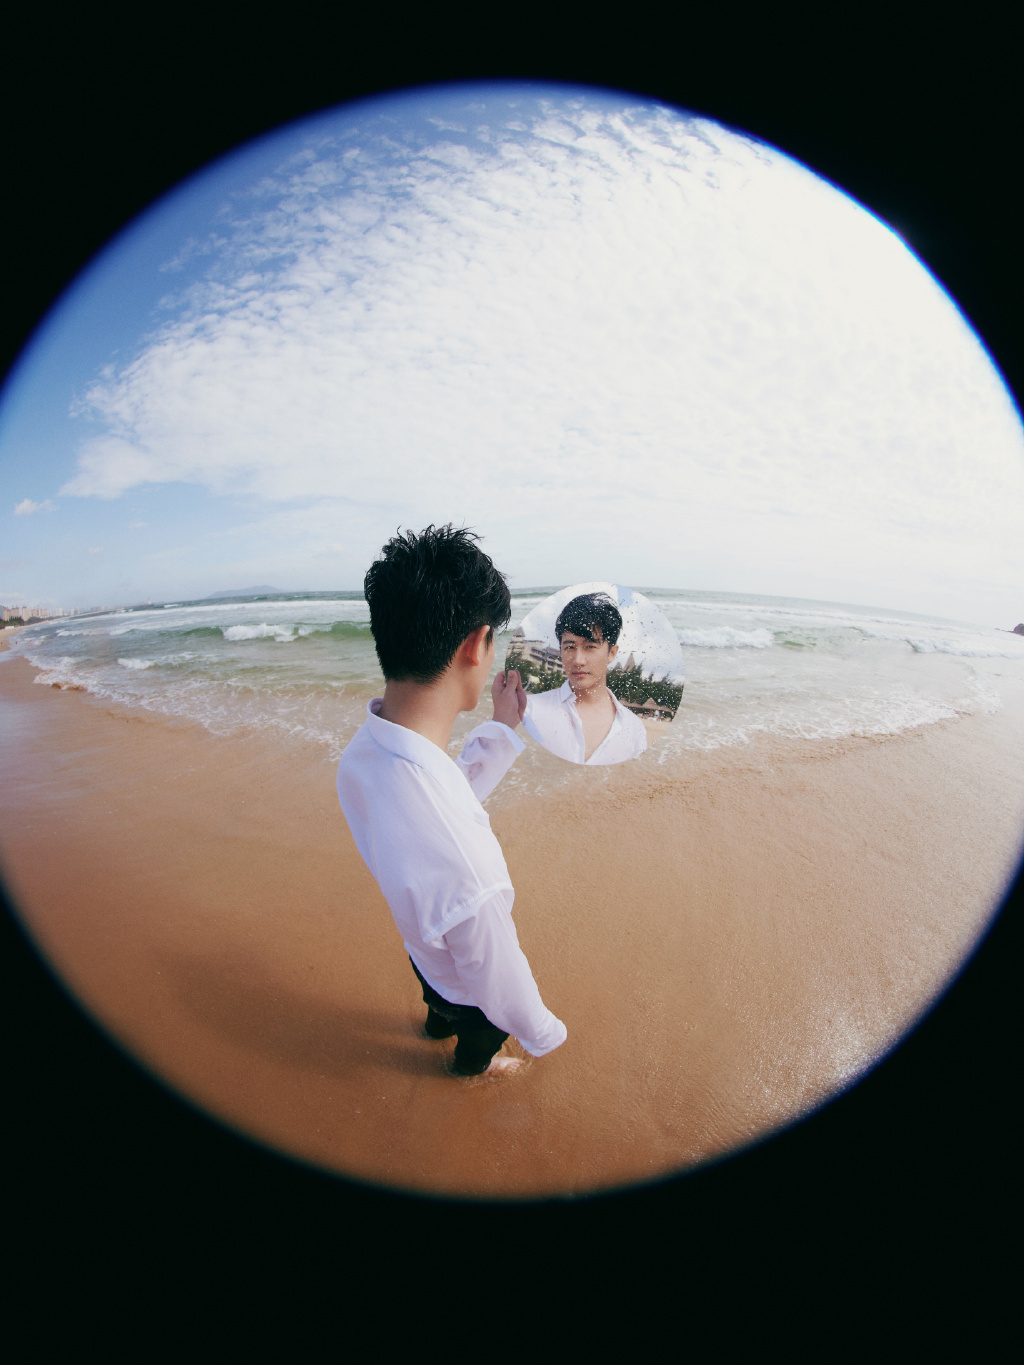 黄轩白衬衣慵懒沙滩写真